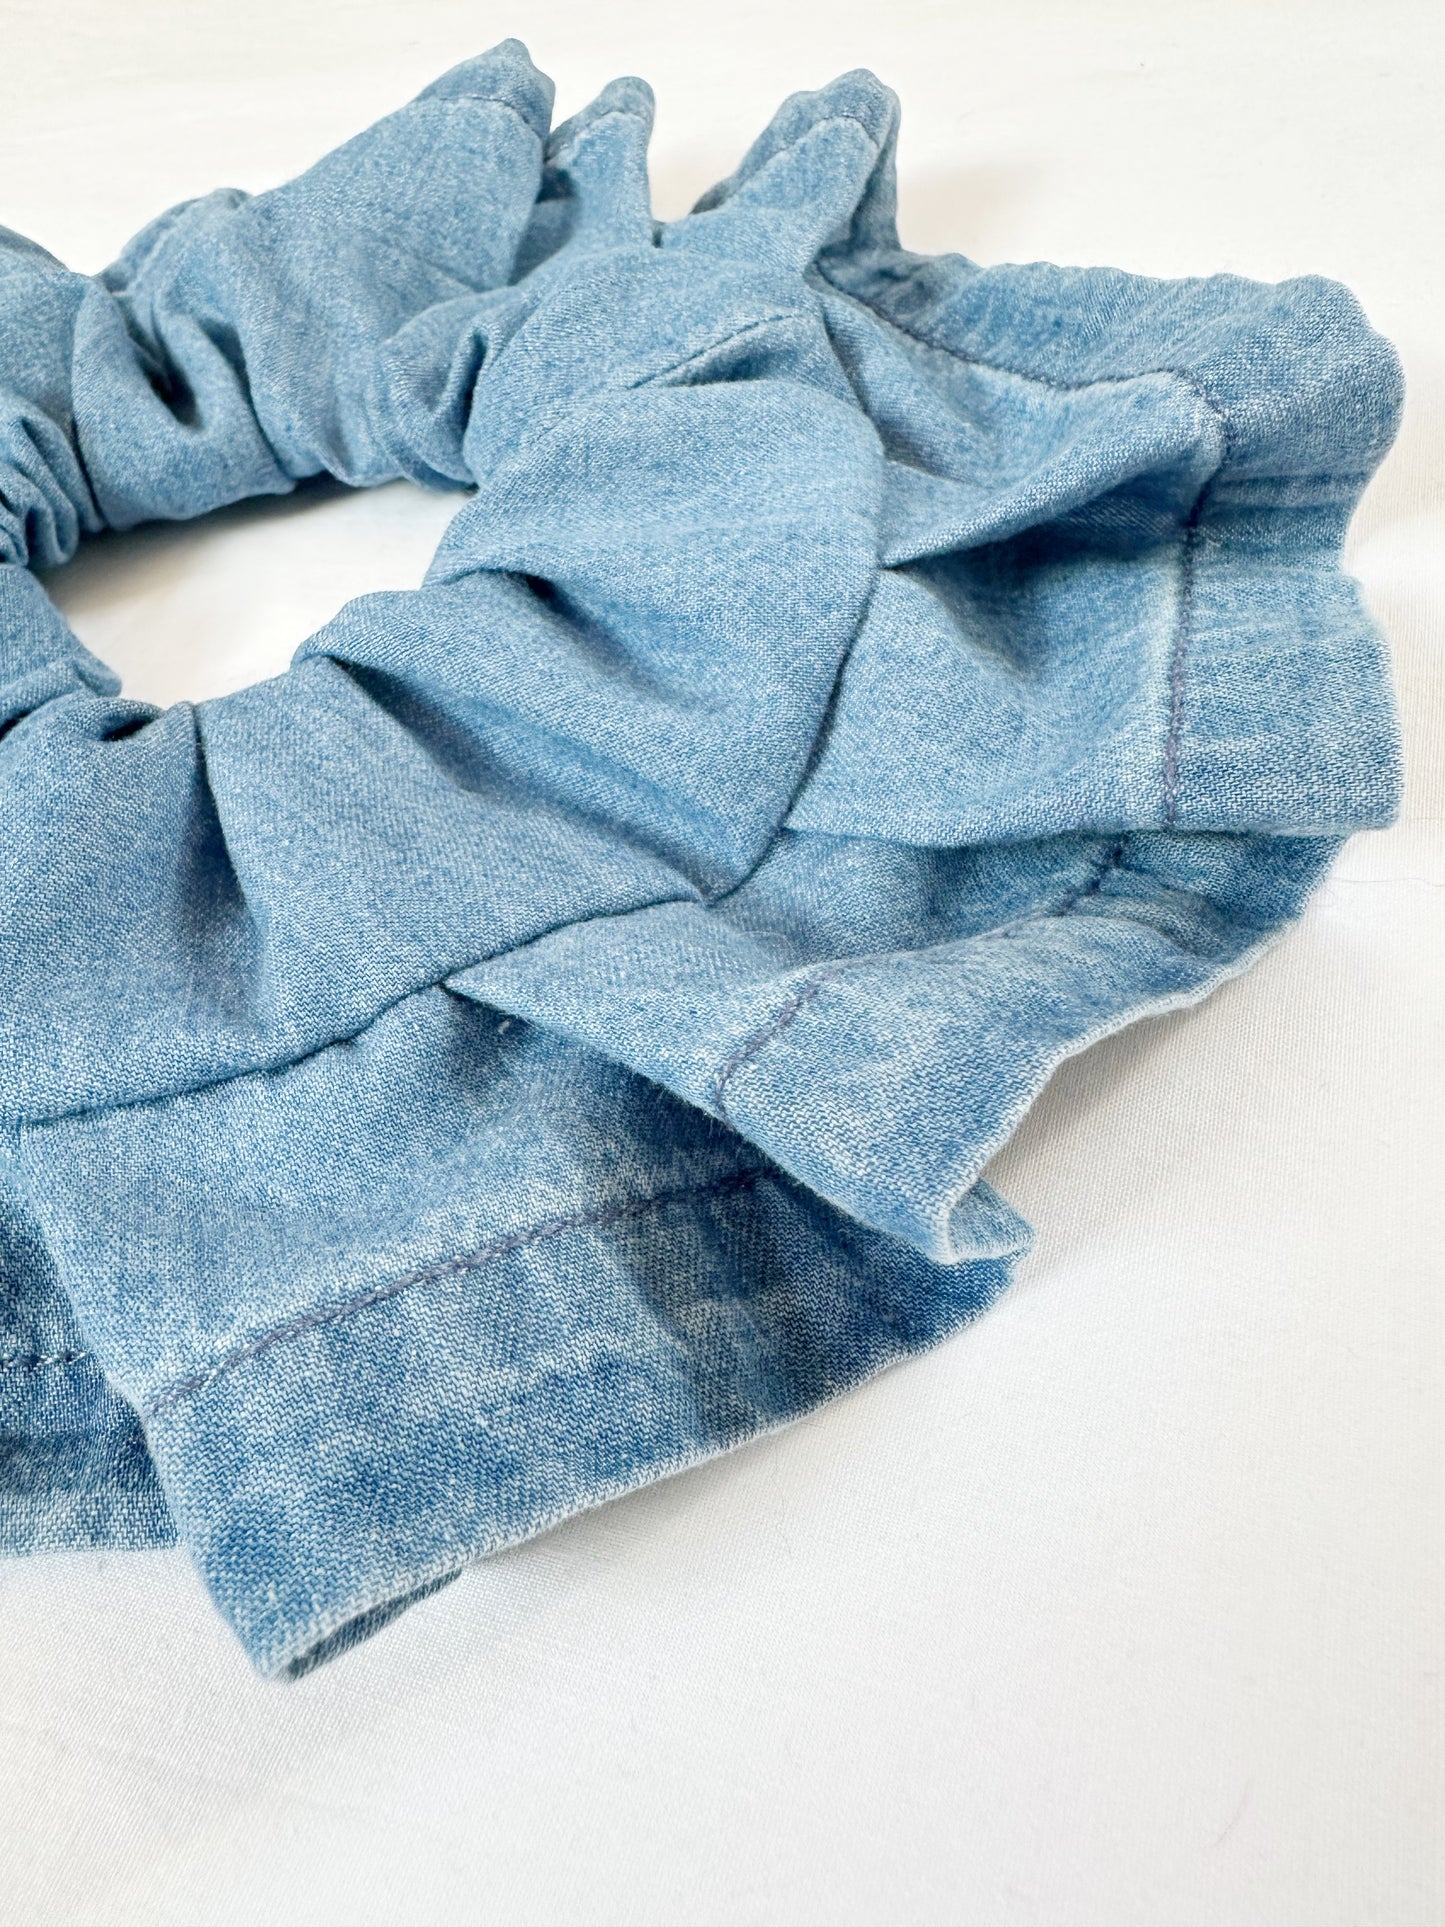 Oversized scrunchie in denim blue ruffle